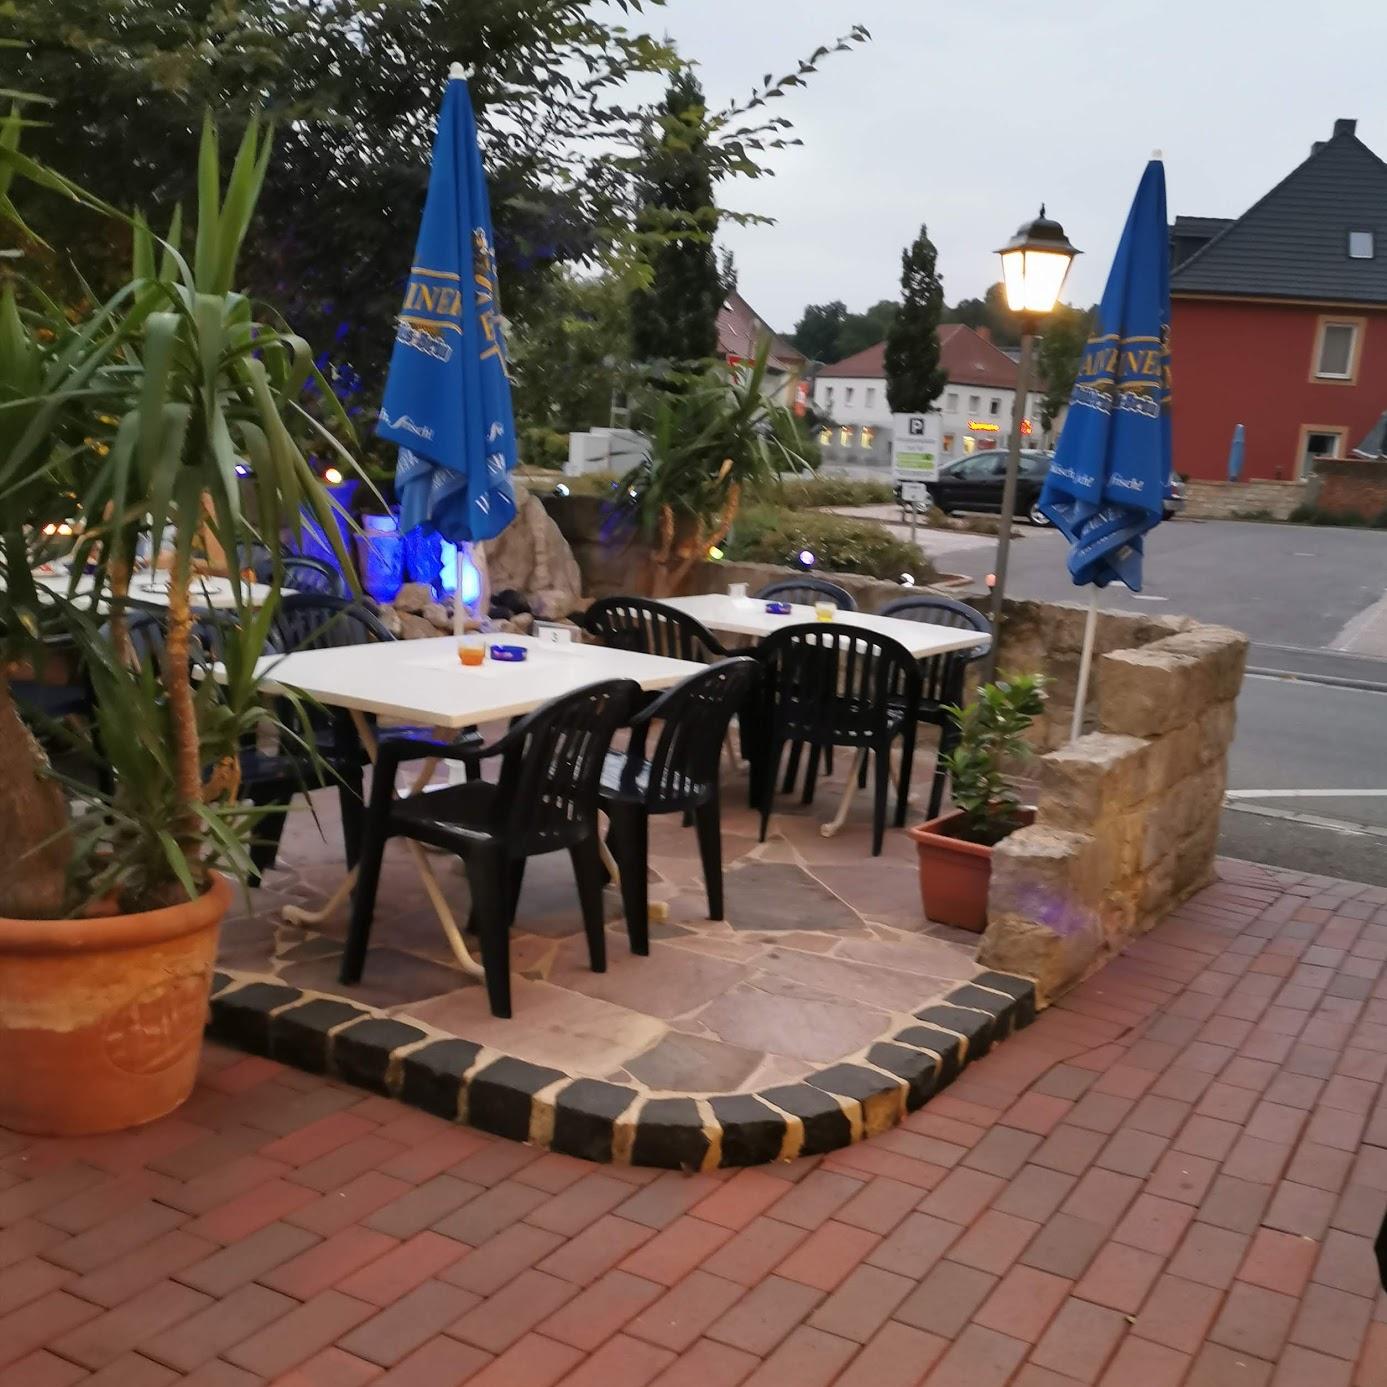 Restaurant "Restaurant Balkan" in Altenkunstadt